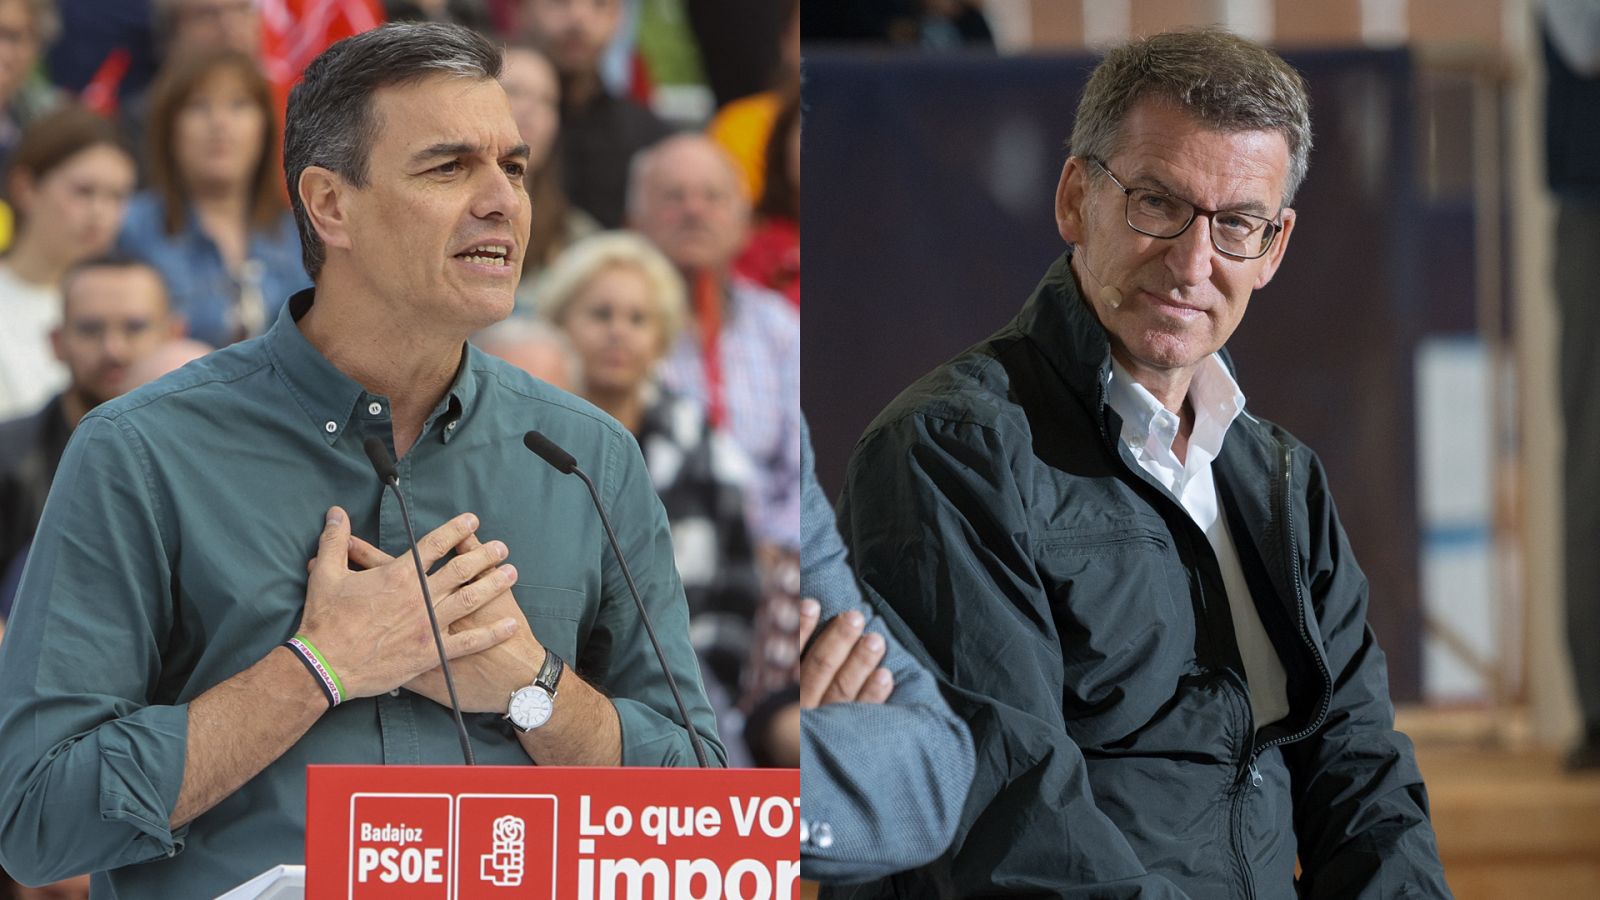 28M: Sánchez y Feijóo cruzan caravanas electorales en Extremadura y los candidatos apuran la recta final de la campaña  